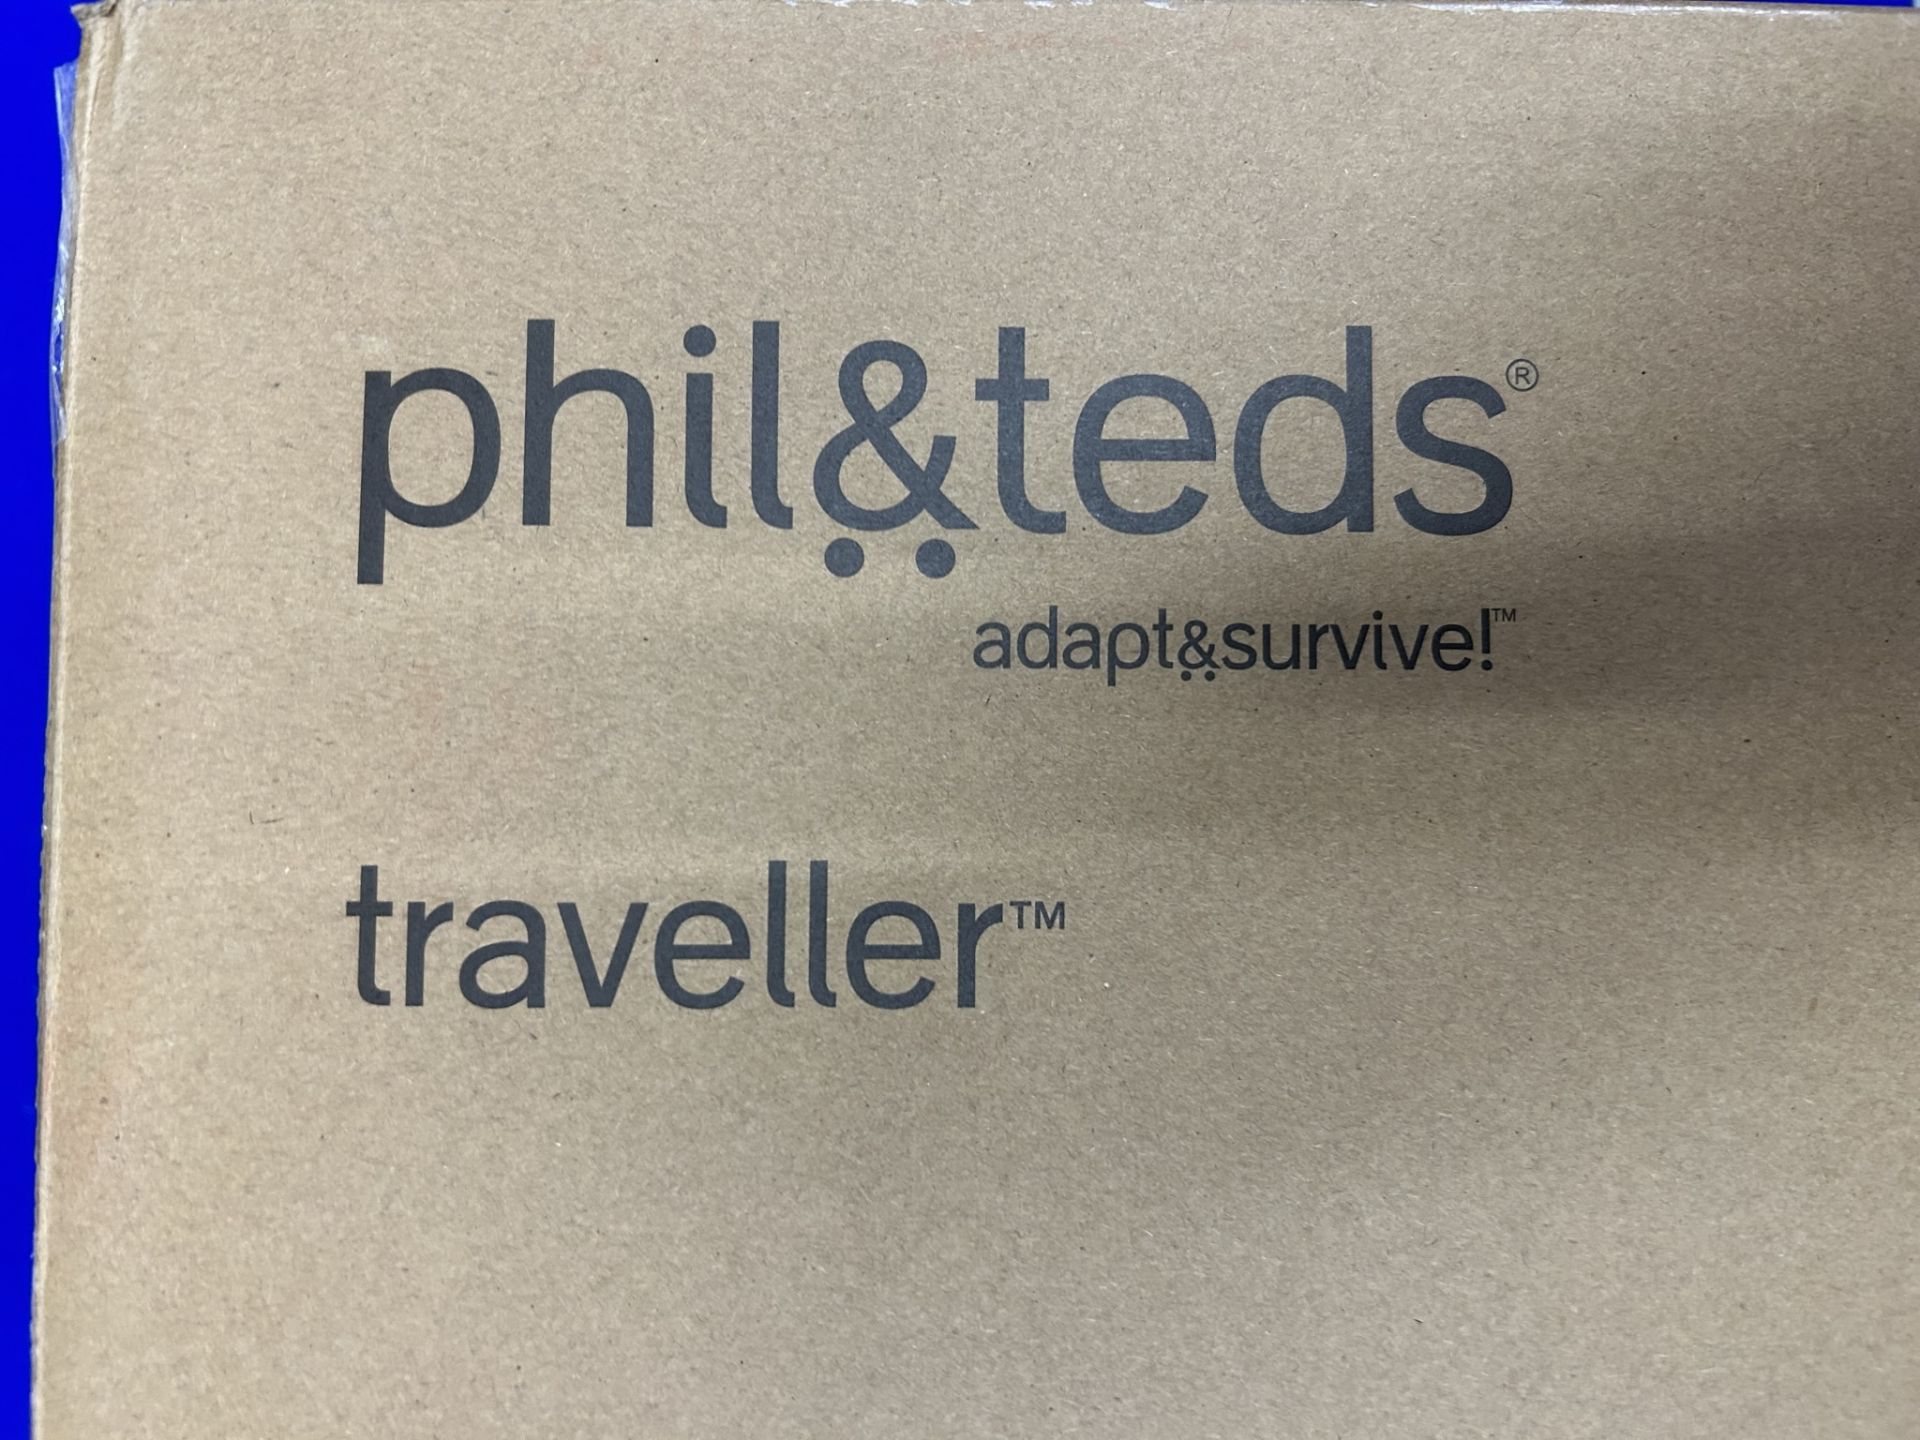 Phil & Ted's Traveller V5 Travel Crib | Black - Image 2 of 3